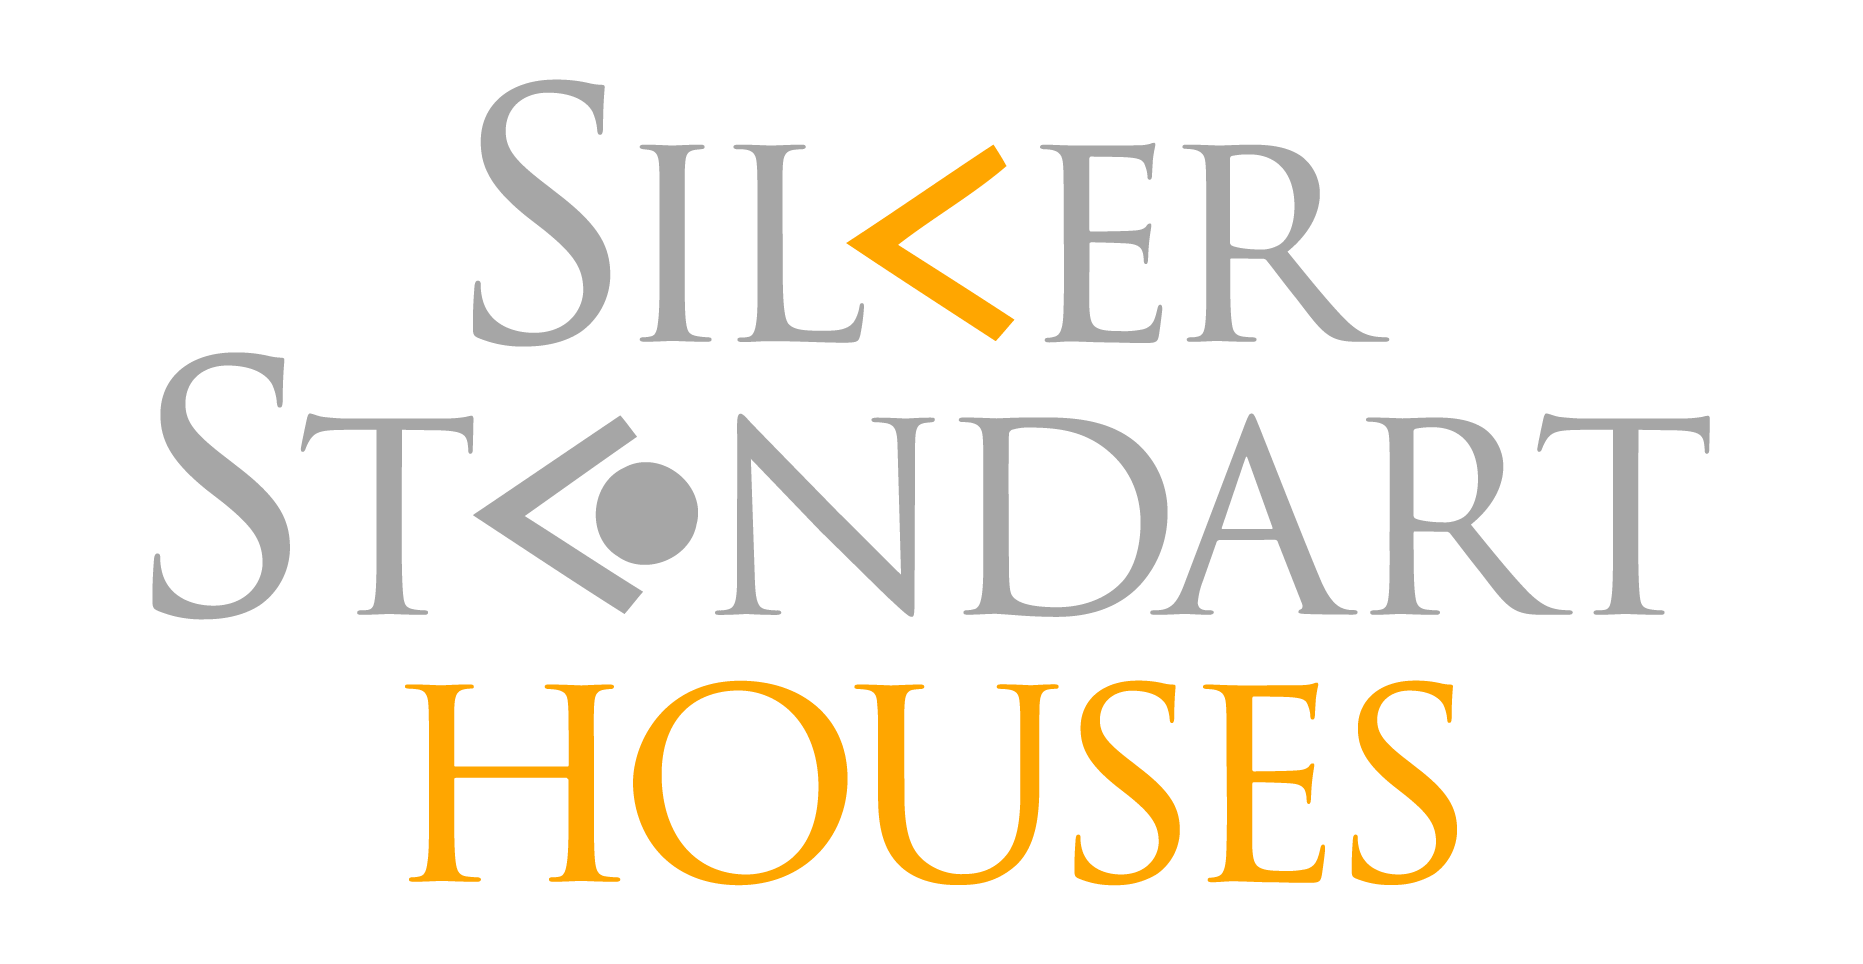 Silver Standart Houses